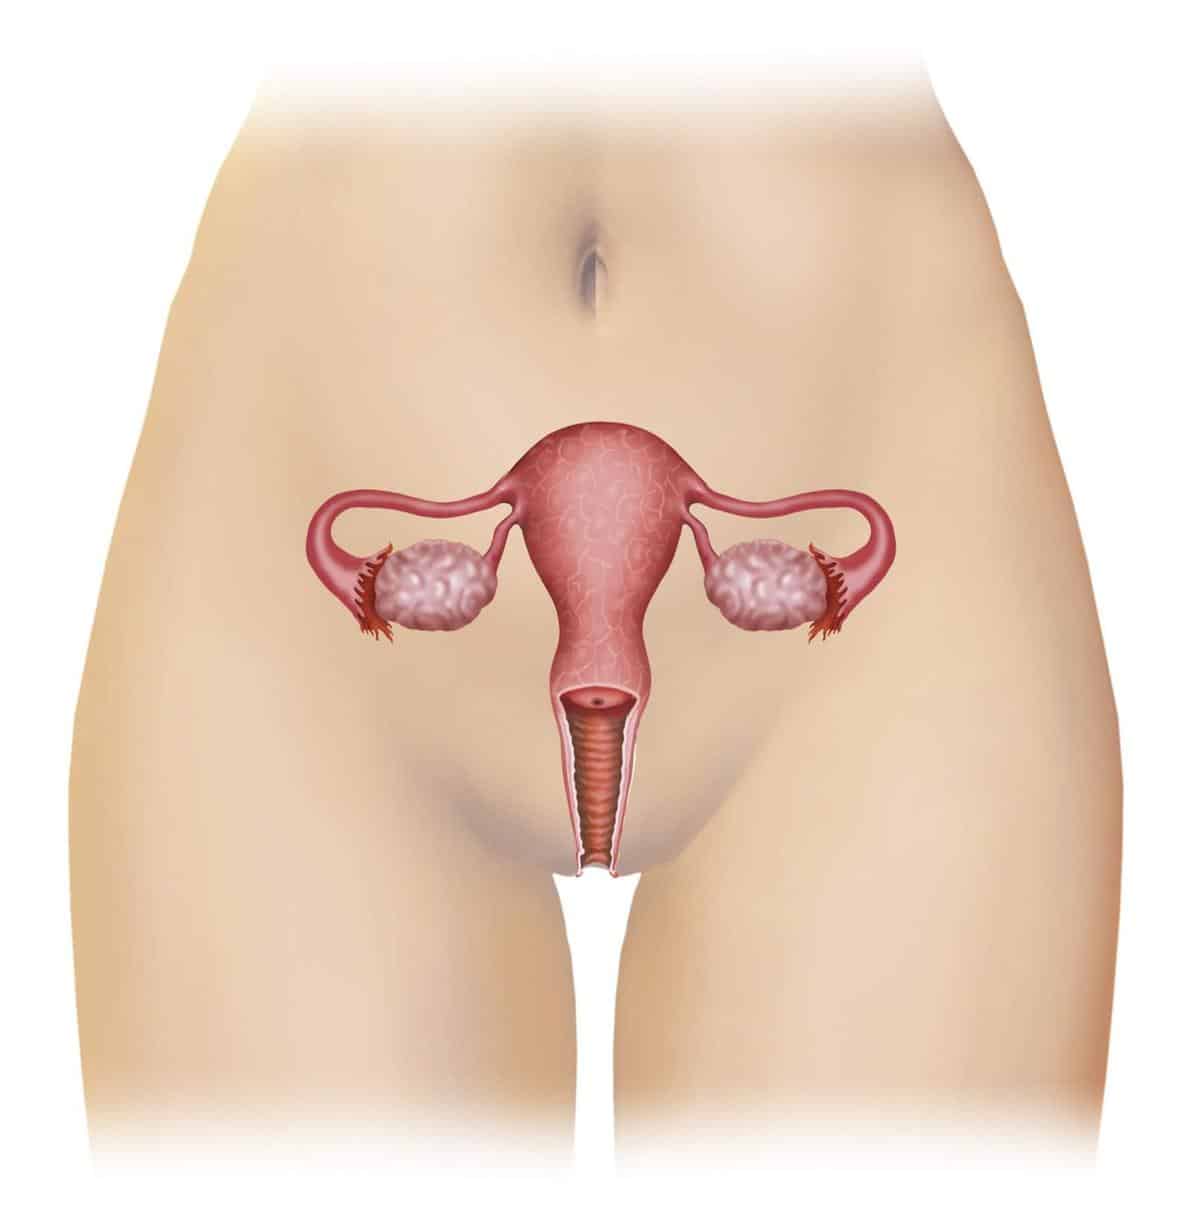 Las infecciones vaginales: tricomoniasis